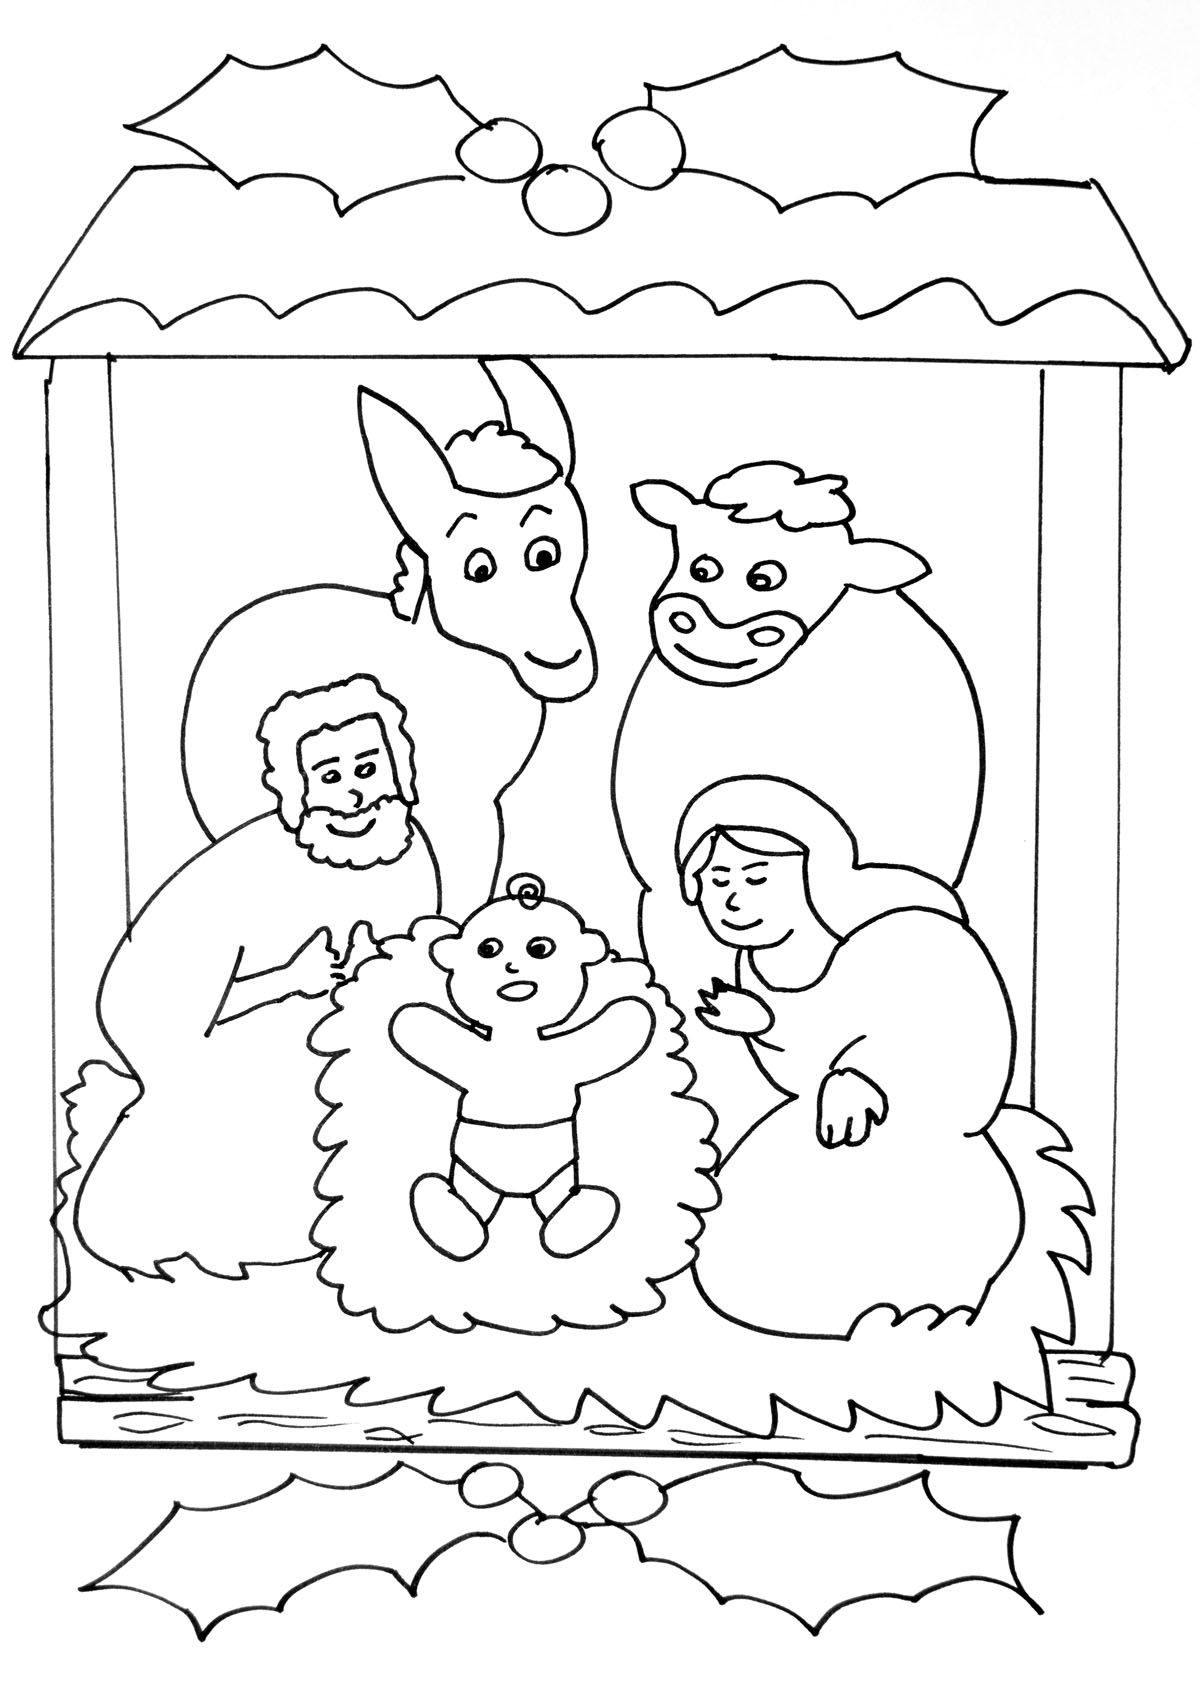 Image de la Crèche de la Nativité à imprimer et colorier